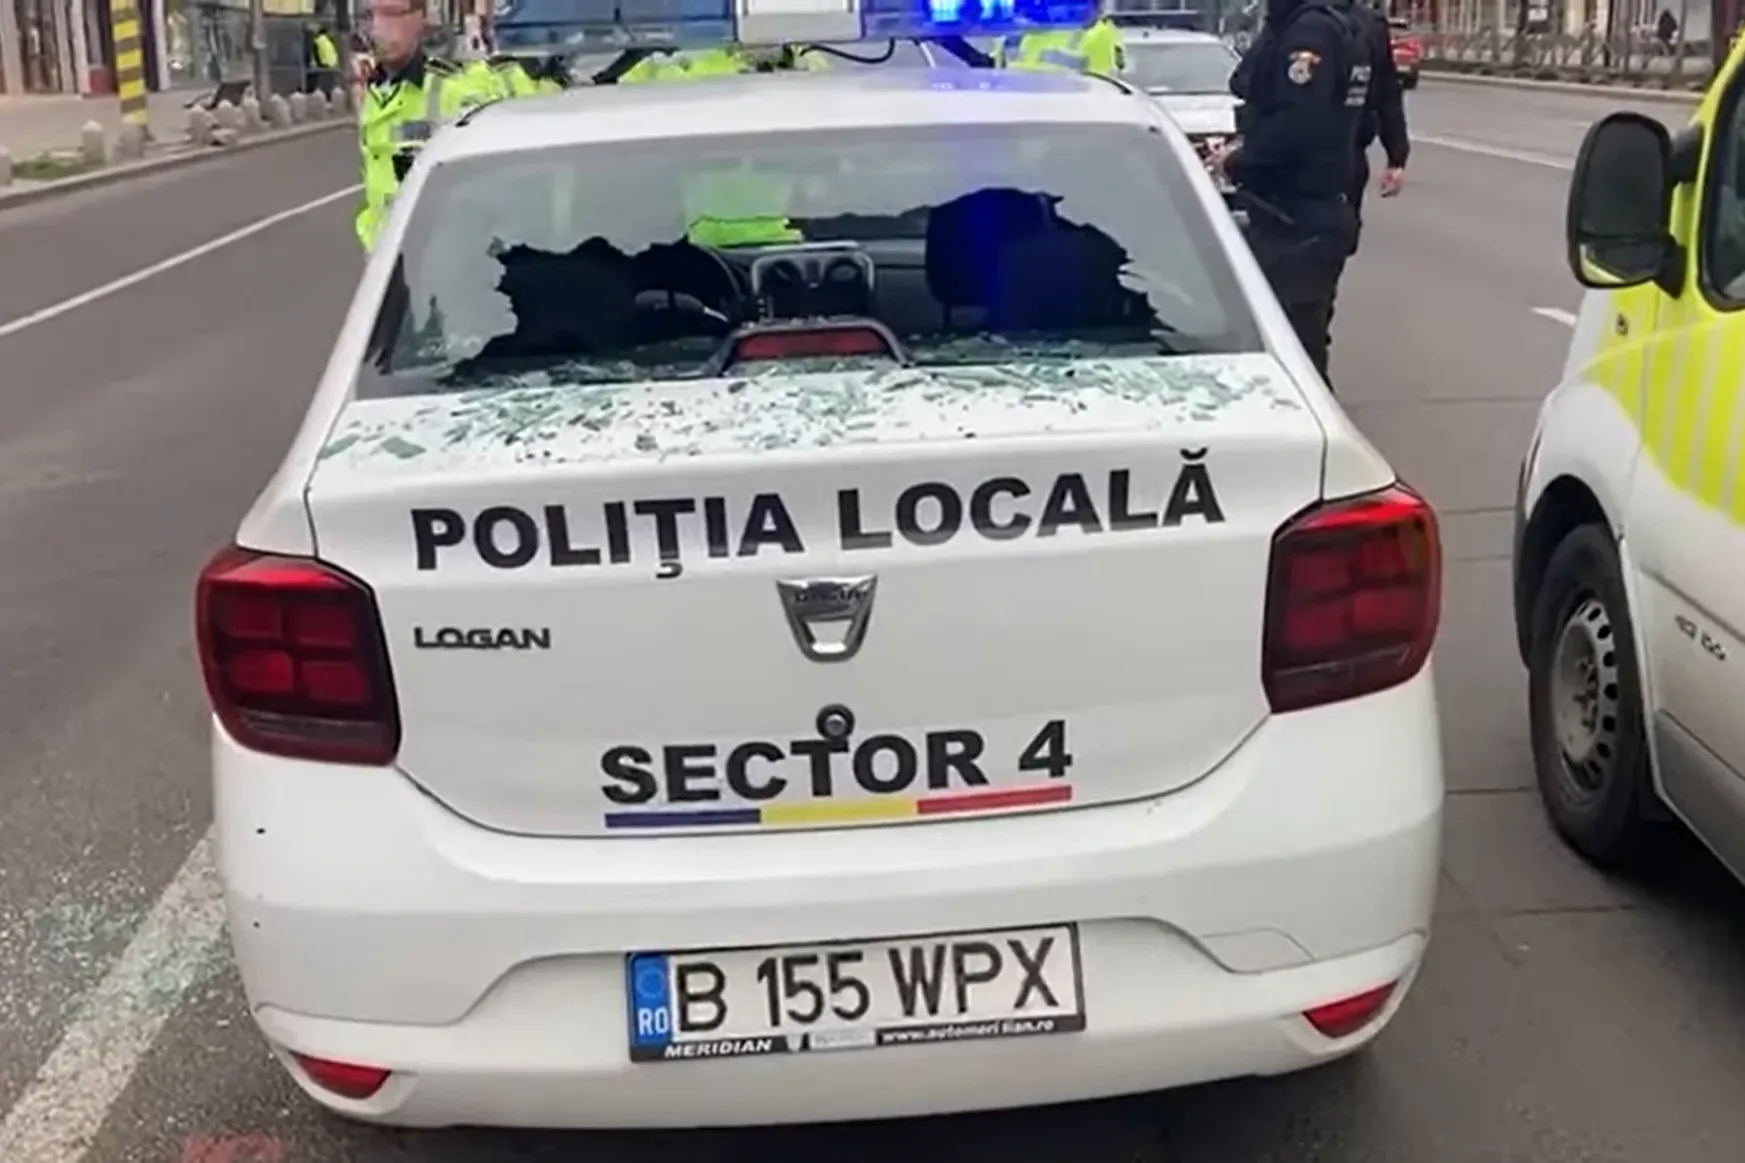 Egy romániai férfi kővel dobálta meg és törte be a rendőrautó ablakait április 1-jén